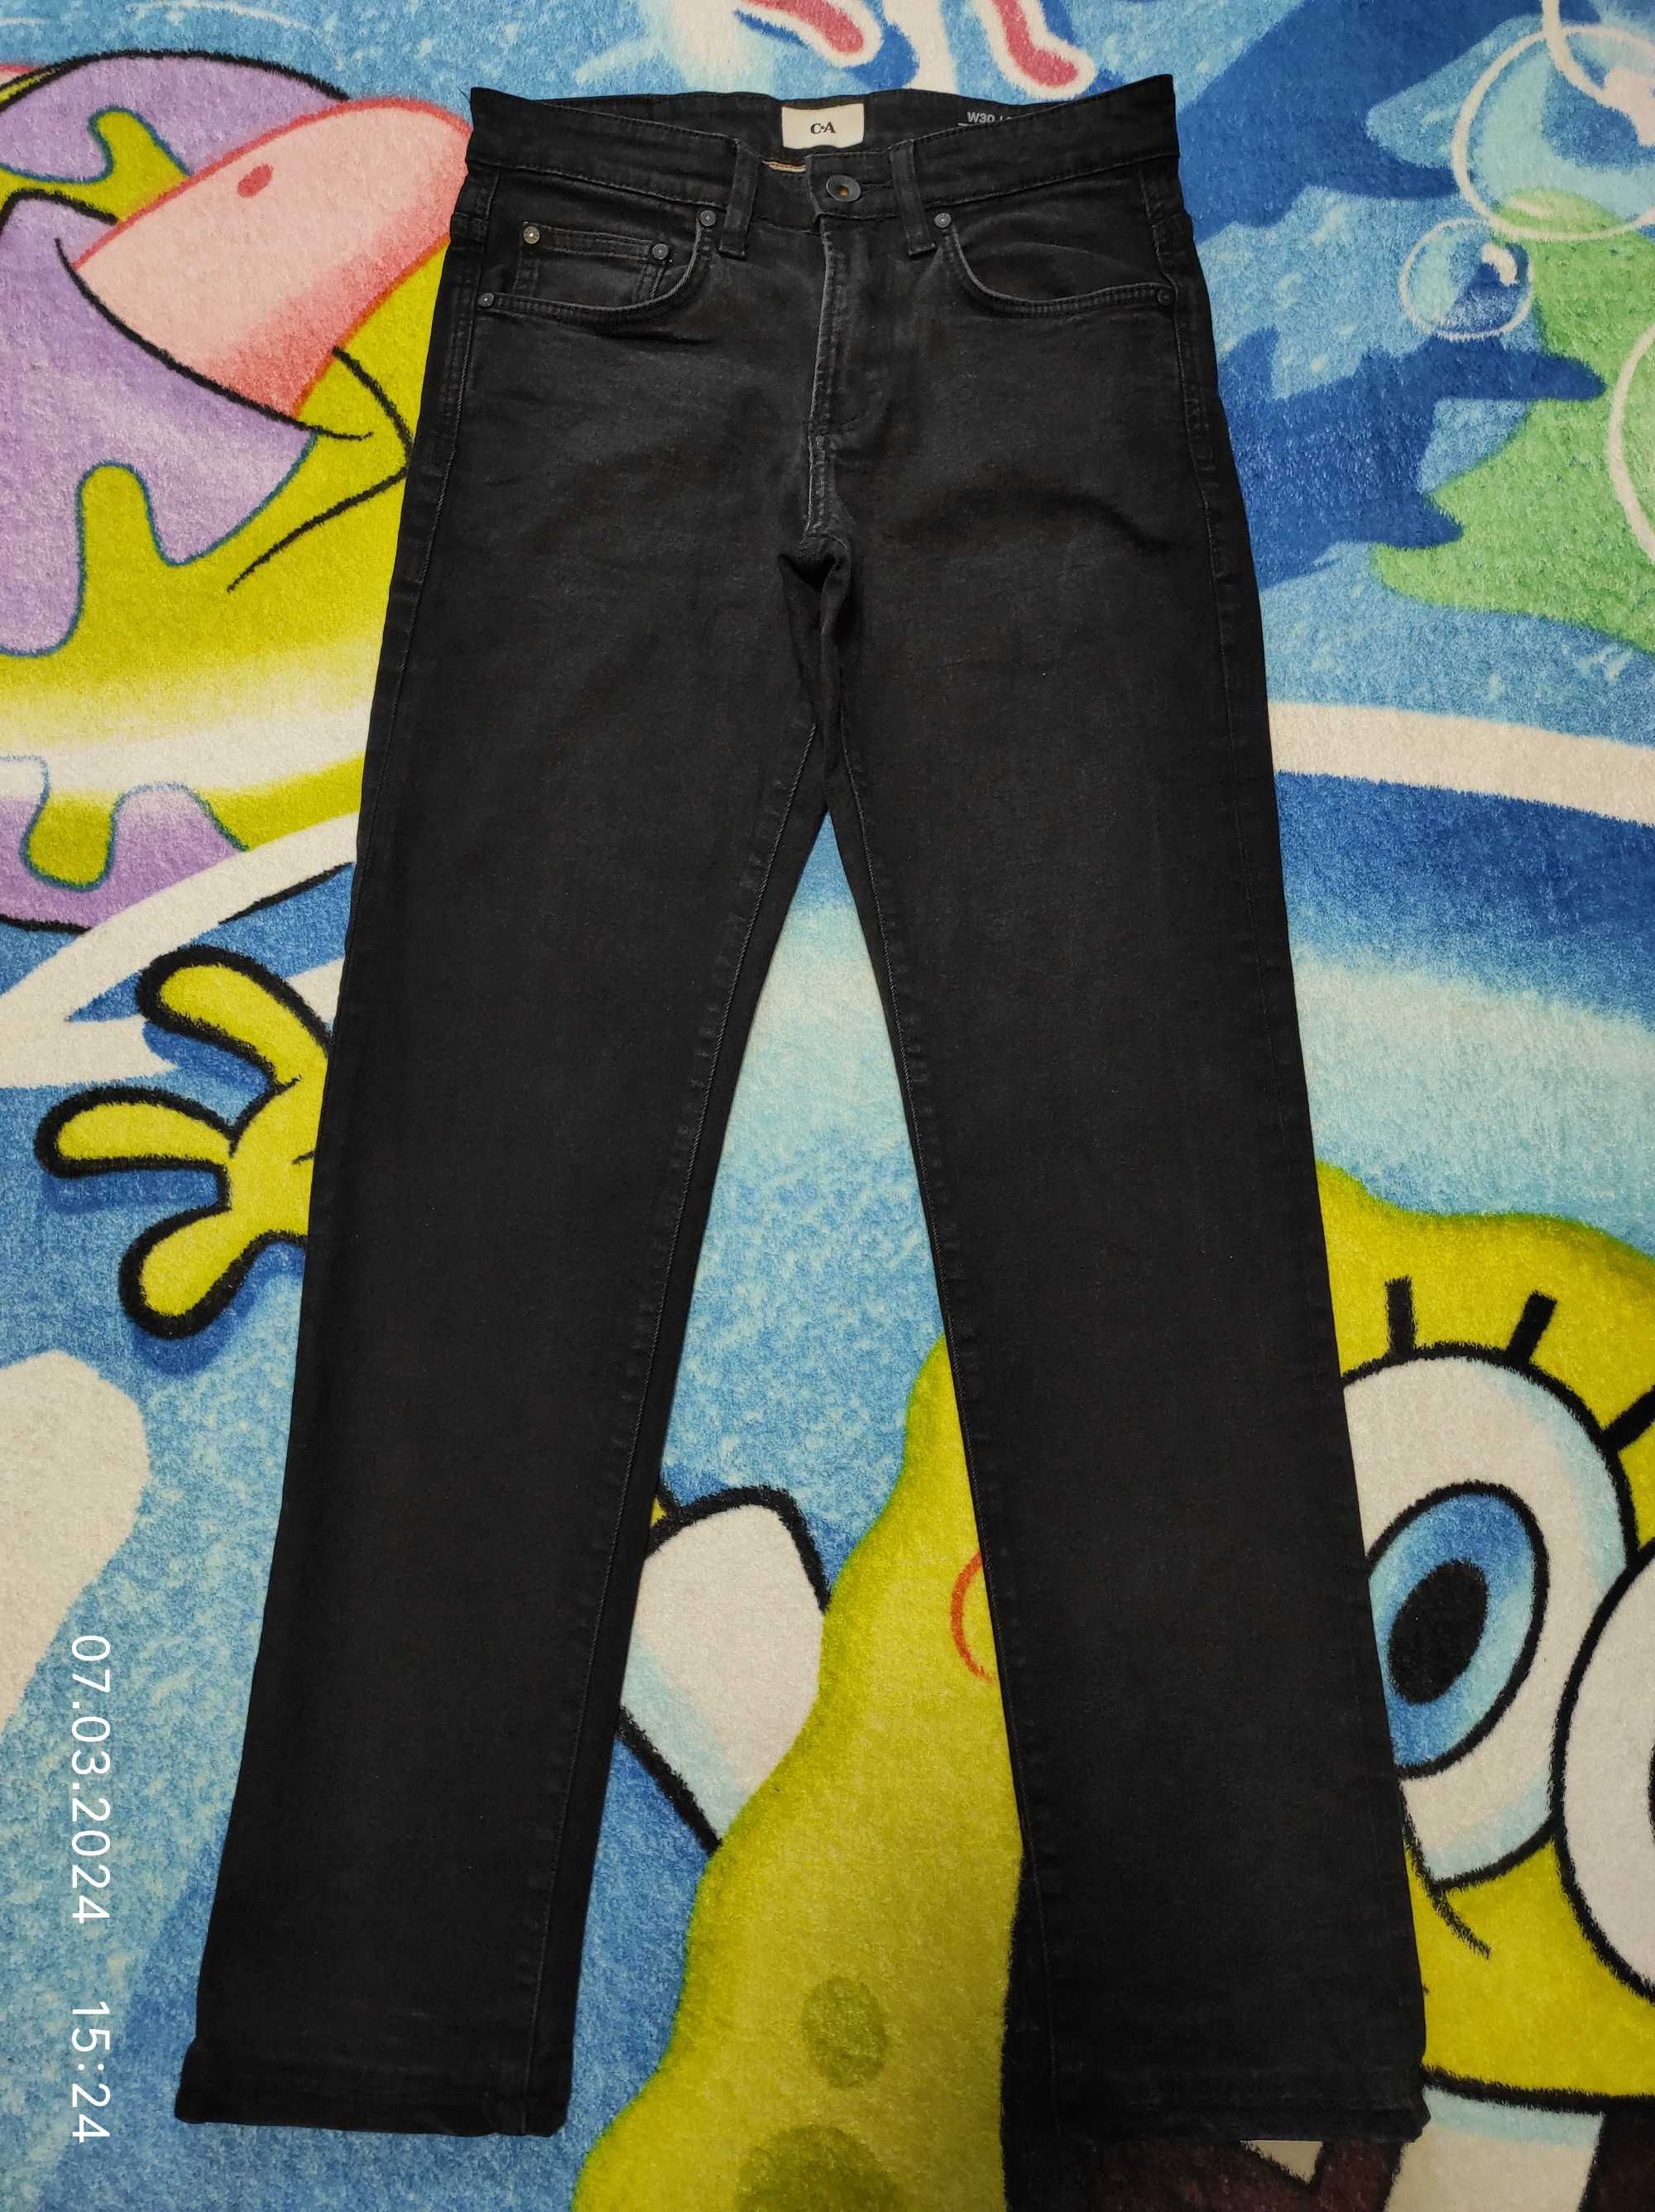 Чорні,фірмові джинси для хлопчика 13-14 років можна в школу.